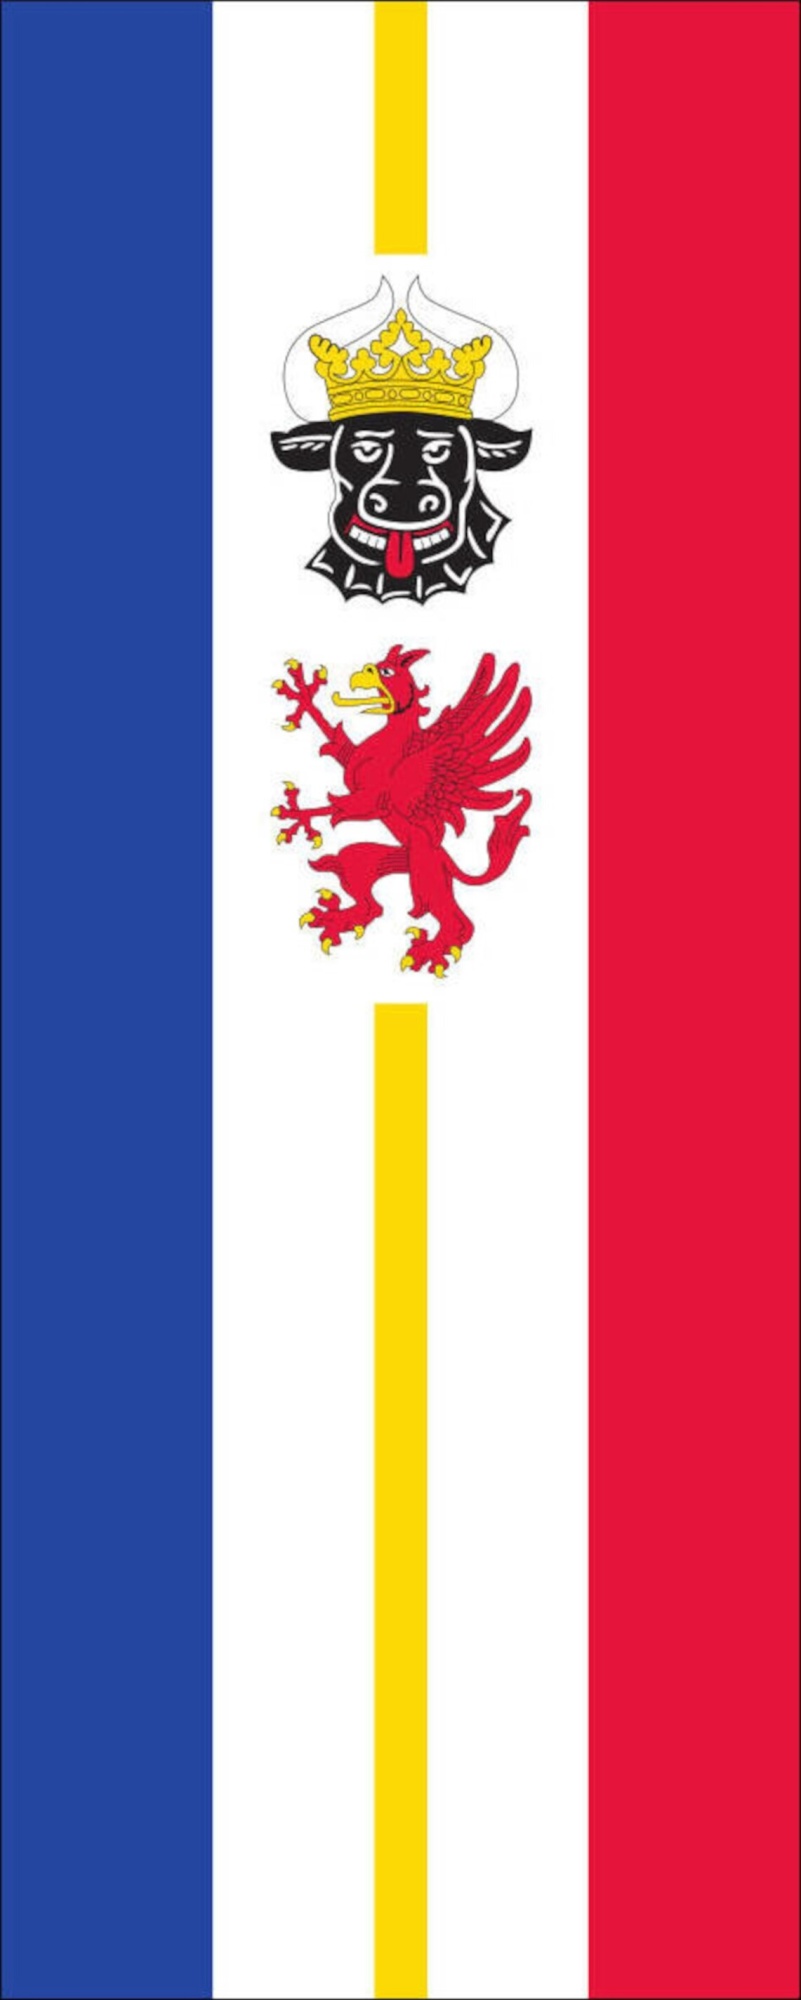 Flagge Mecklenburg-Vorpommern mit Wappenbildern